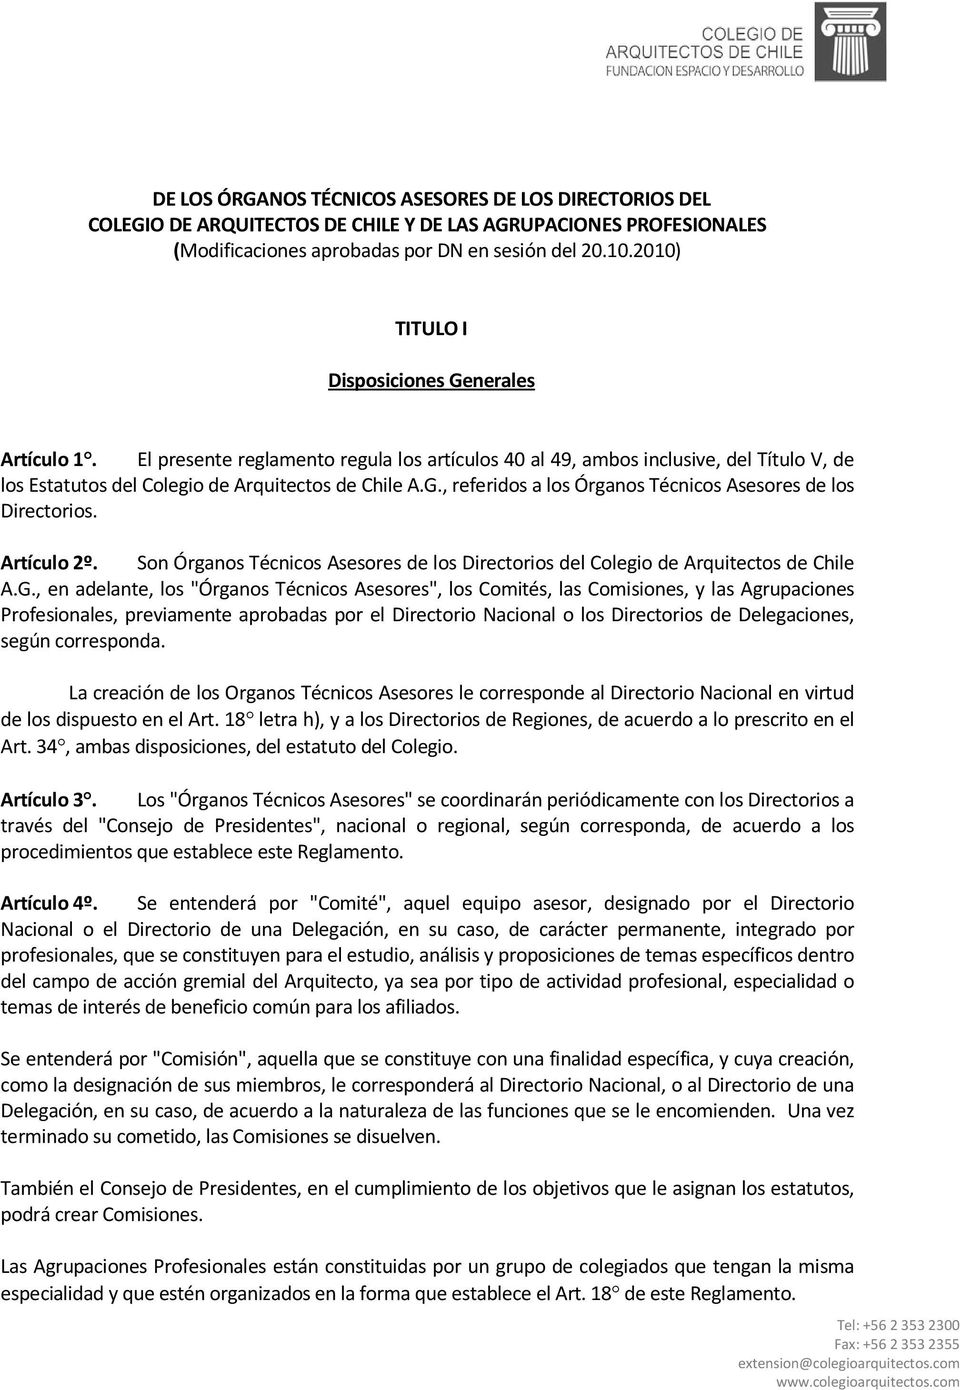 Artículo 2º. Son Órganos Técnicos Asesores de los Directorios del Colegio de Arquitectos de Chile A.G.